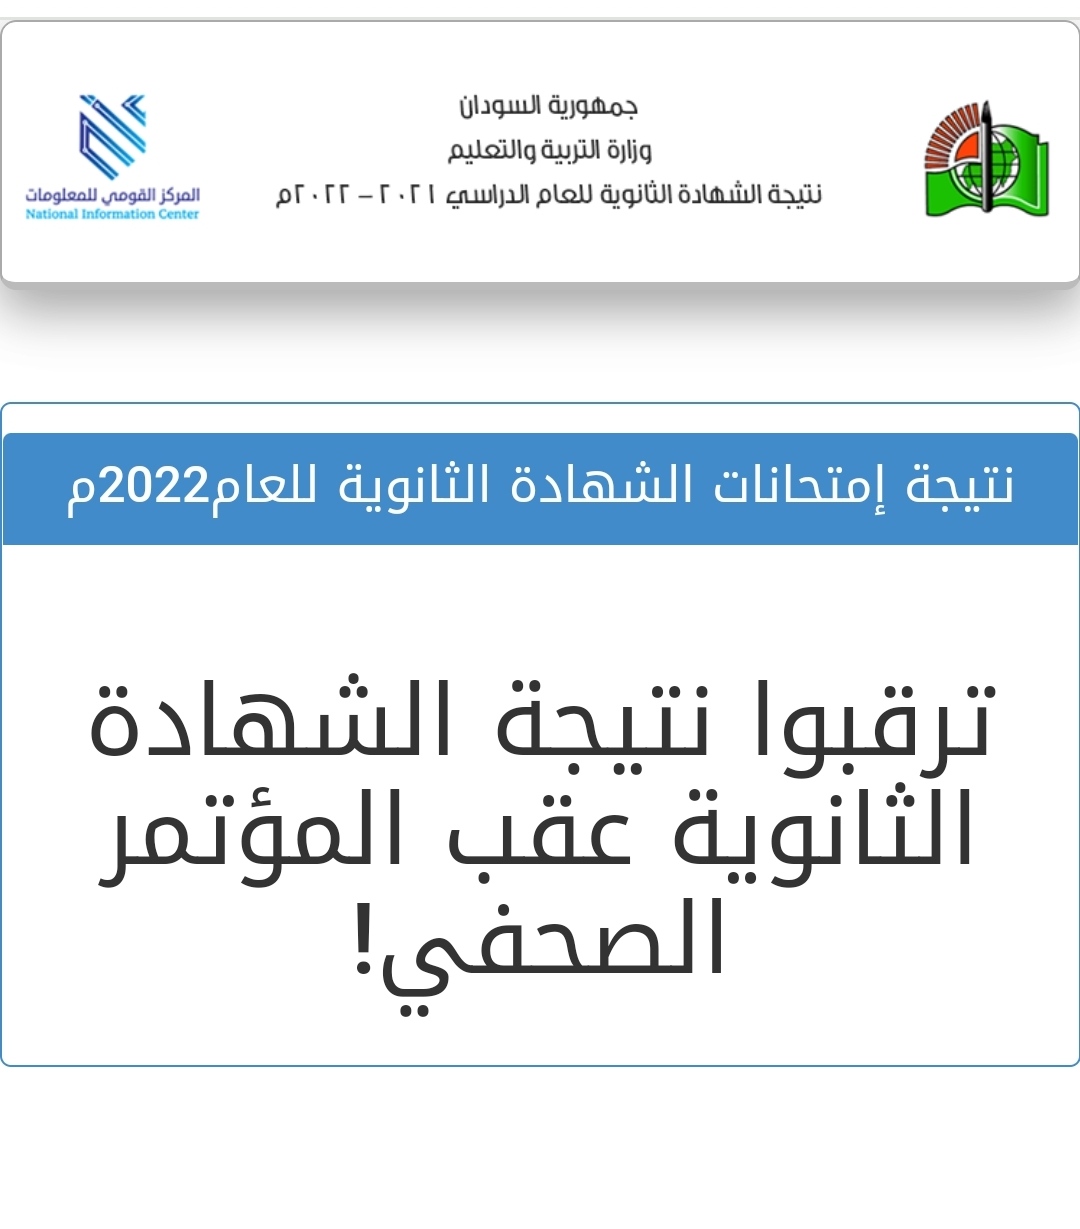 IMG 20220929 125814 - مدونة التقنية العربية